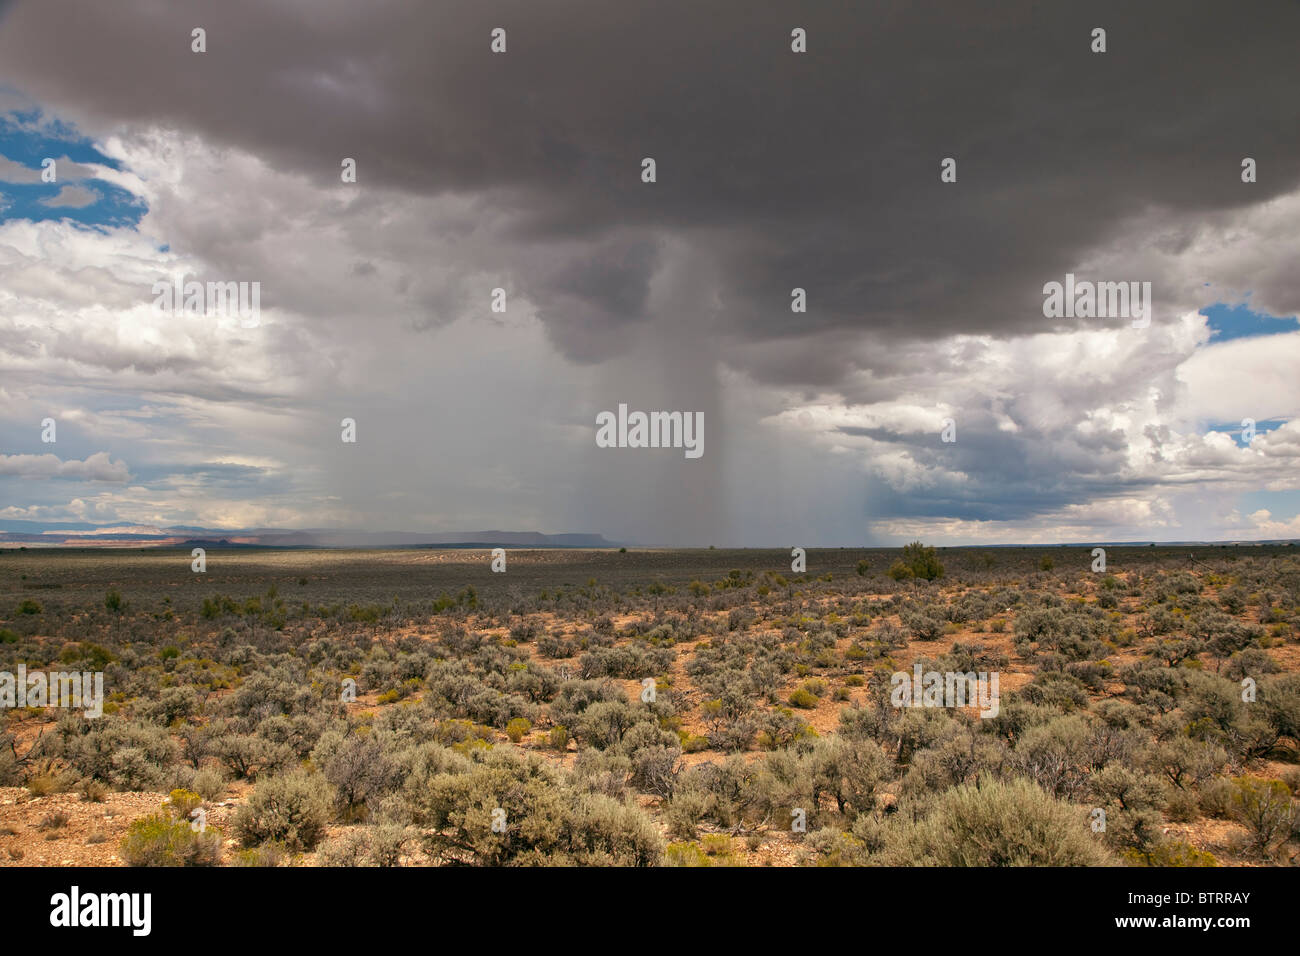 Orage d'été avec l'arbre isolé de la pluie, désert de l'Arizona, au nord de la bande de pays Fredonia, Arizona, USA Banque D'Images